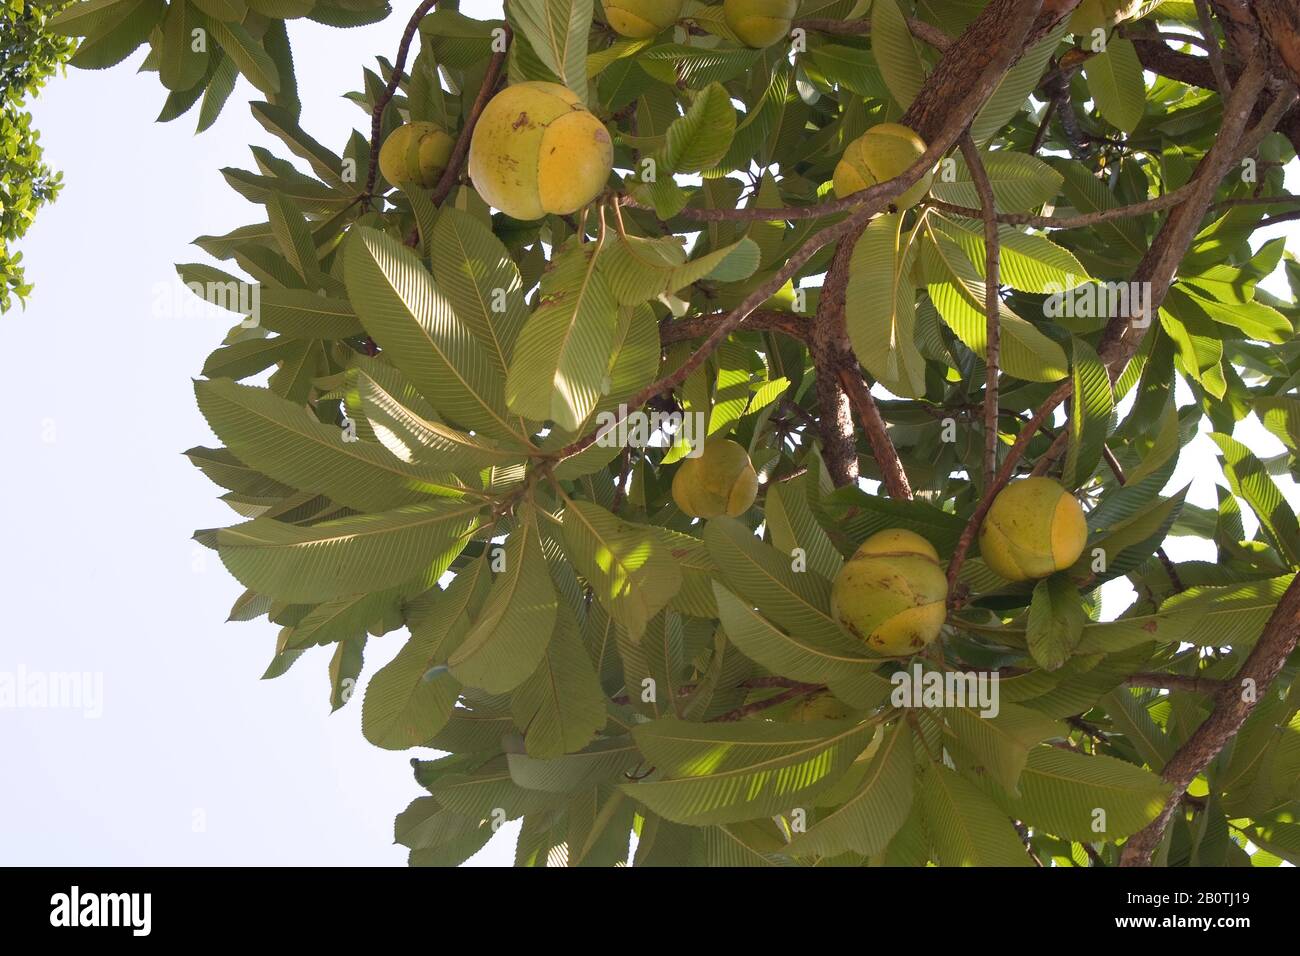 Fruta-pão, Artocarpus altilis, Artocarpus communis, Artocarpus incisus, Breadfruit, Brazil Stock Photo